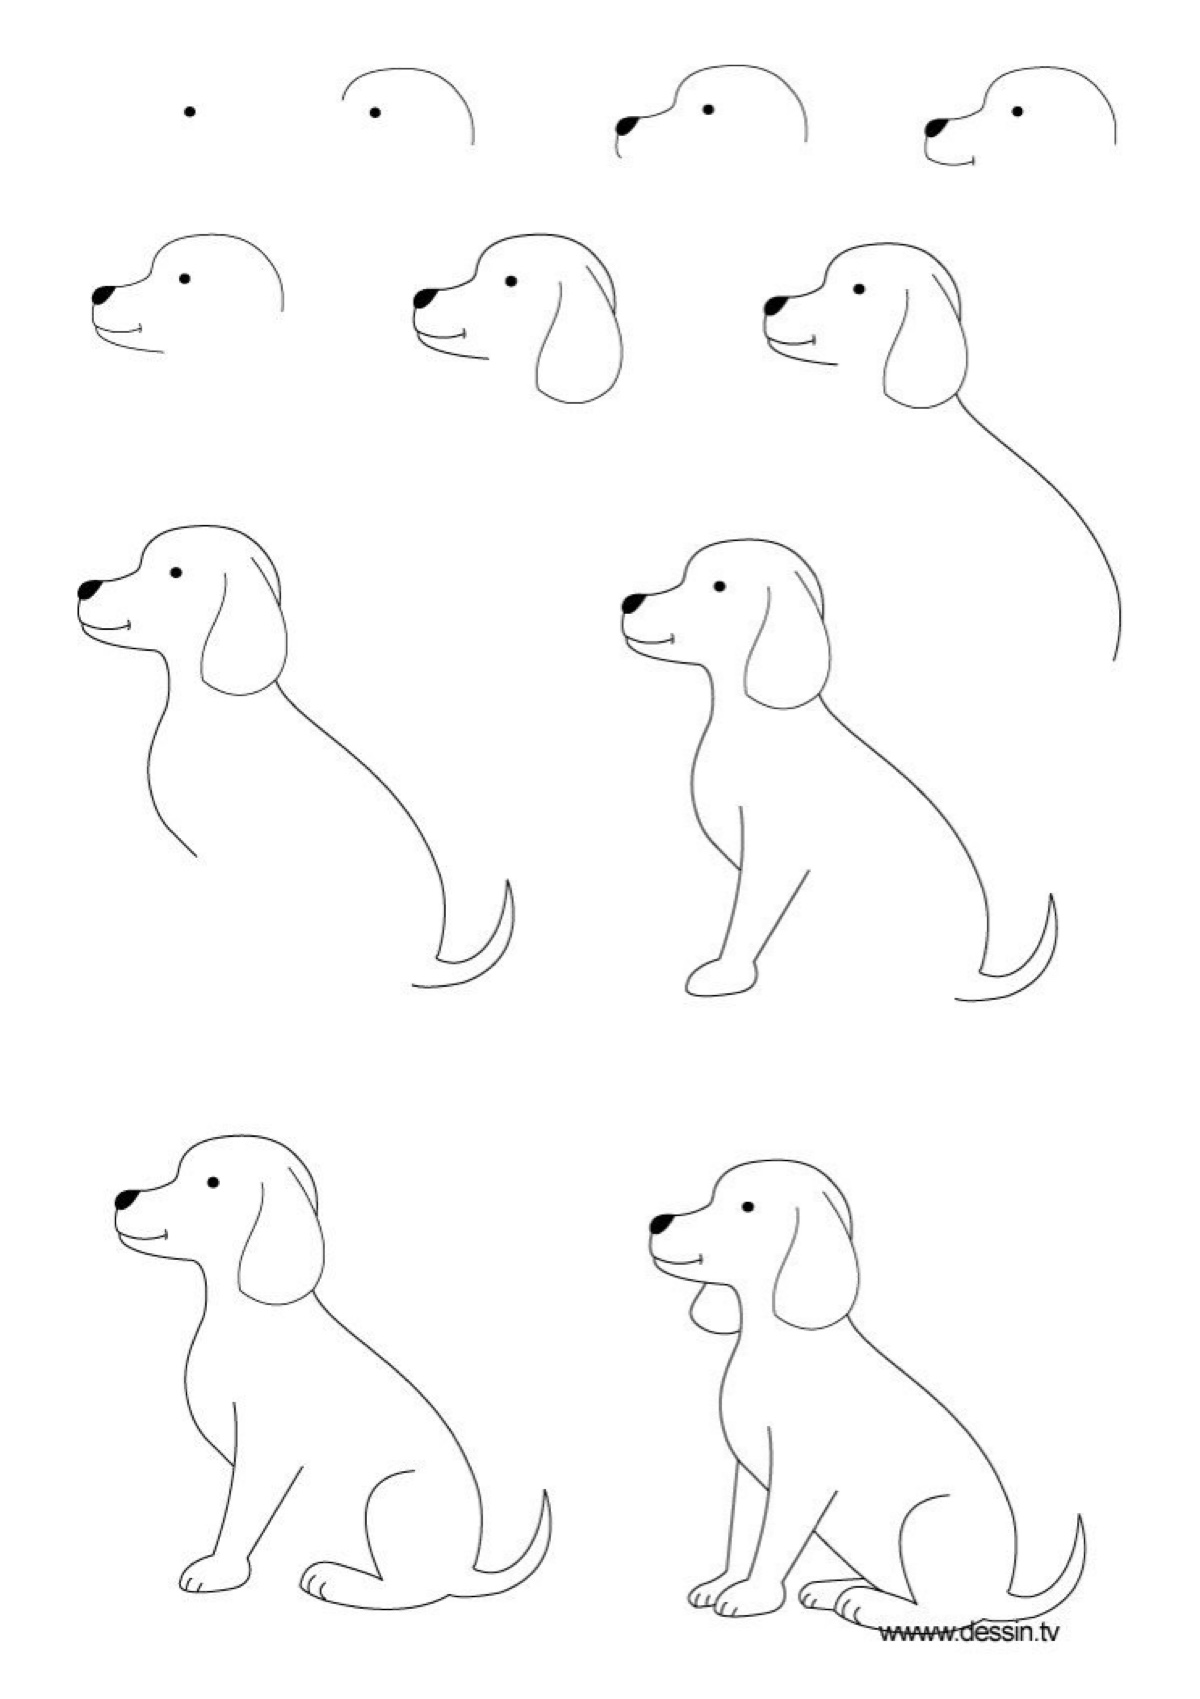 狗的简便画法图片